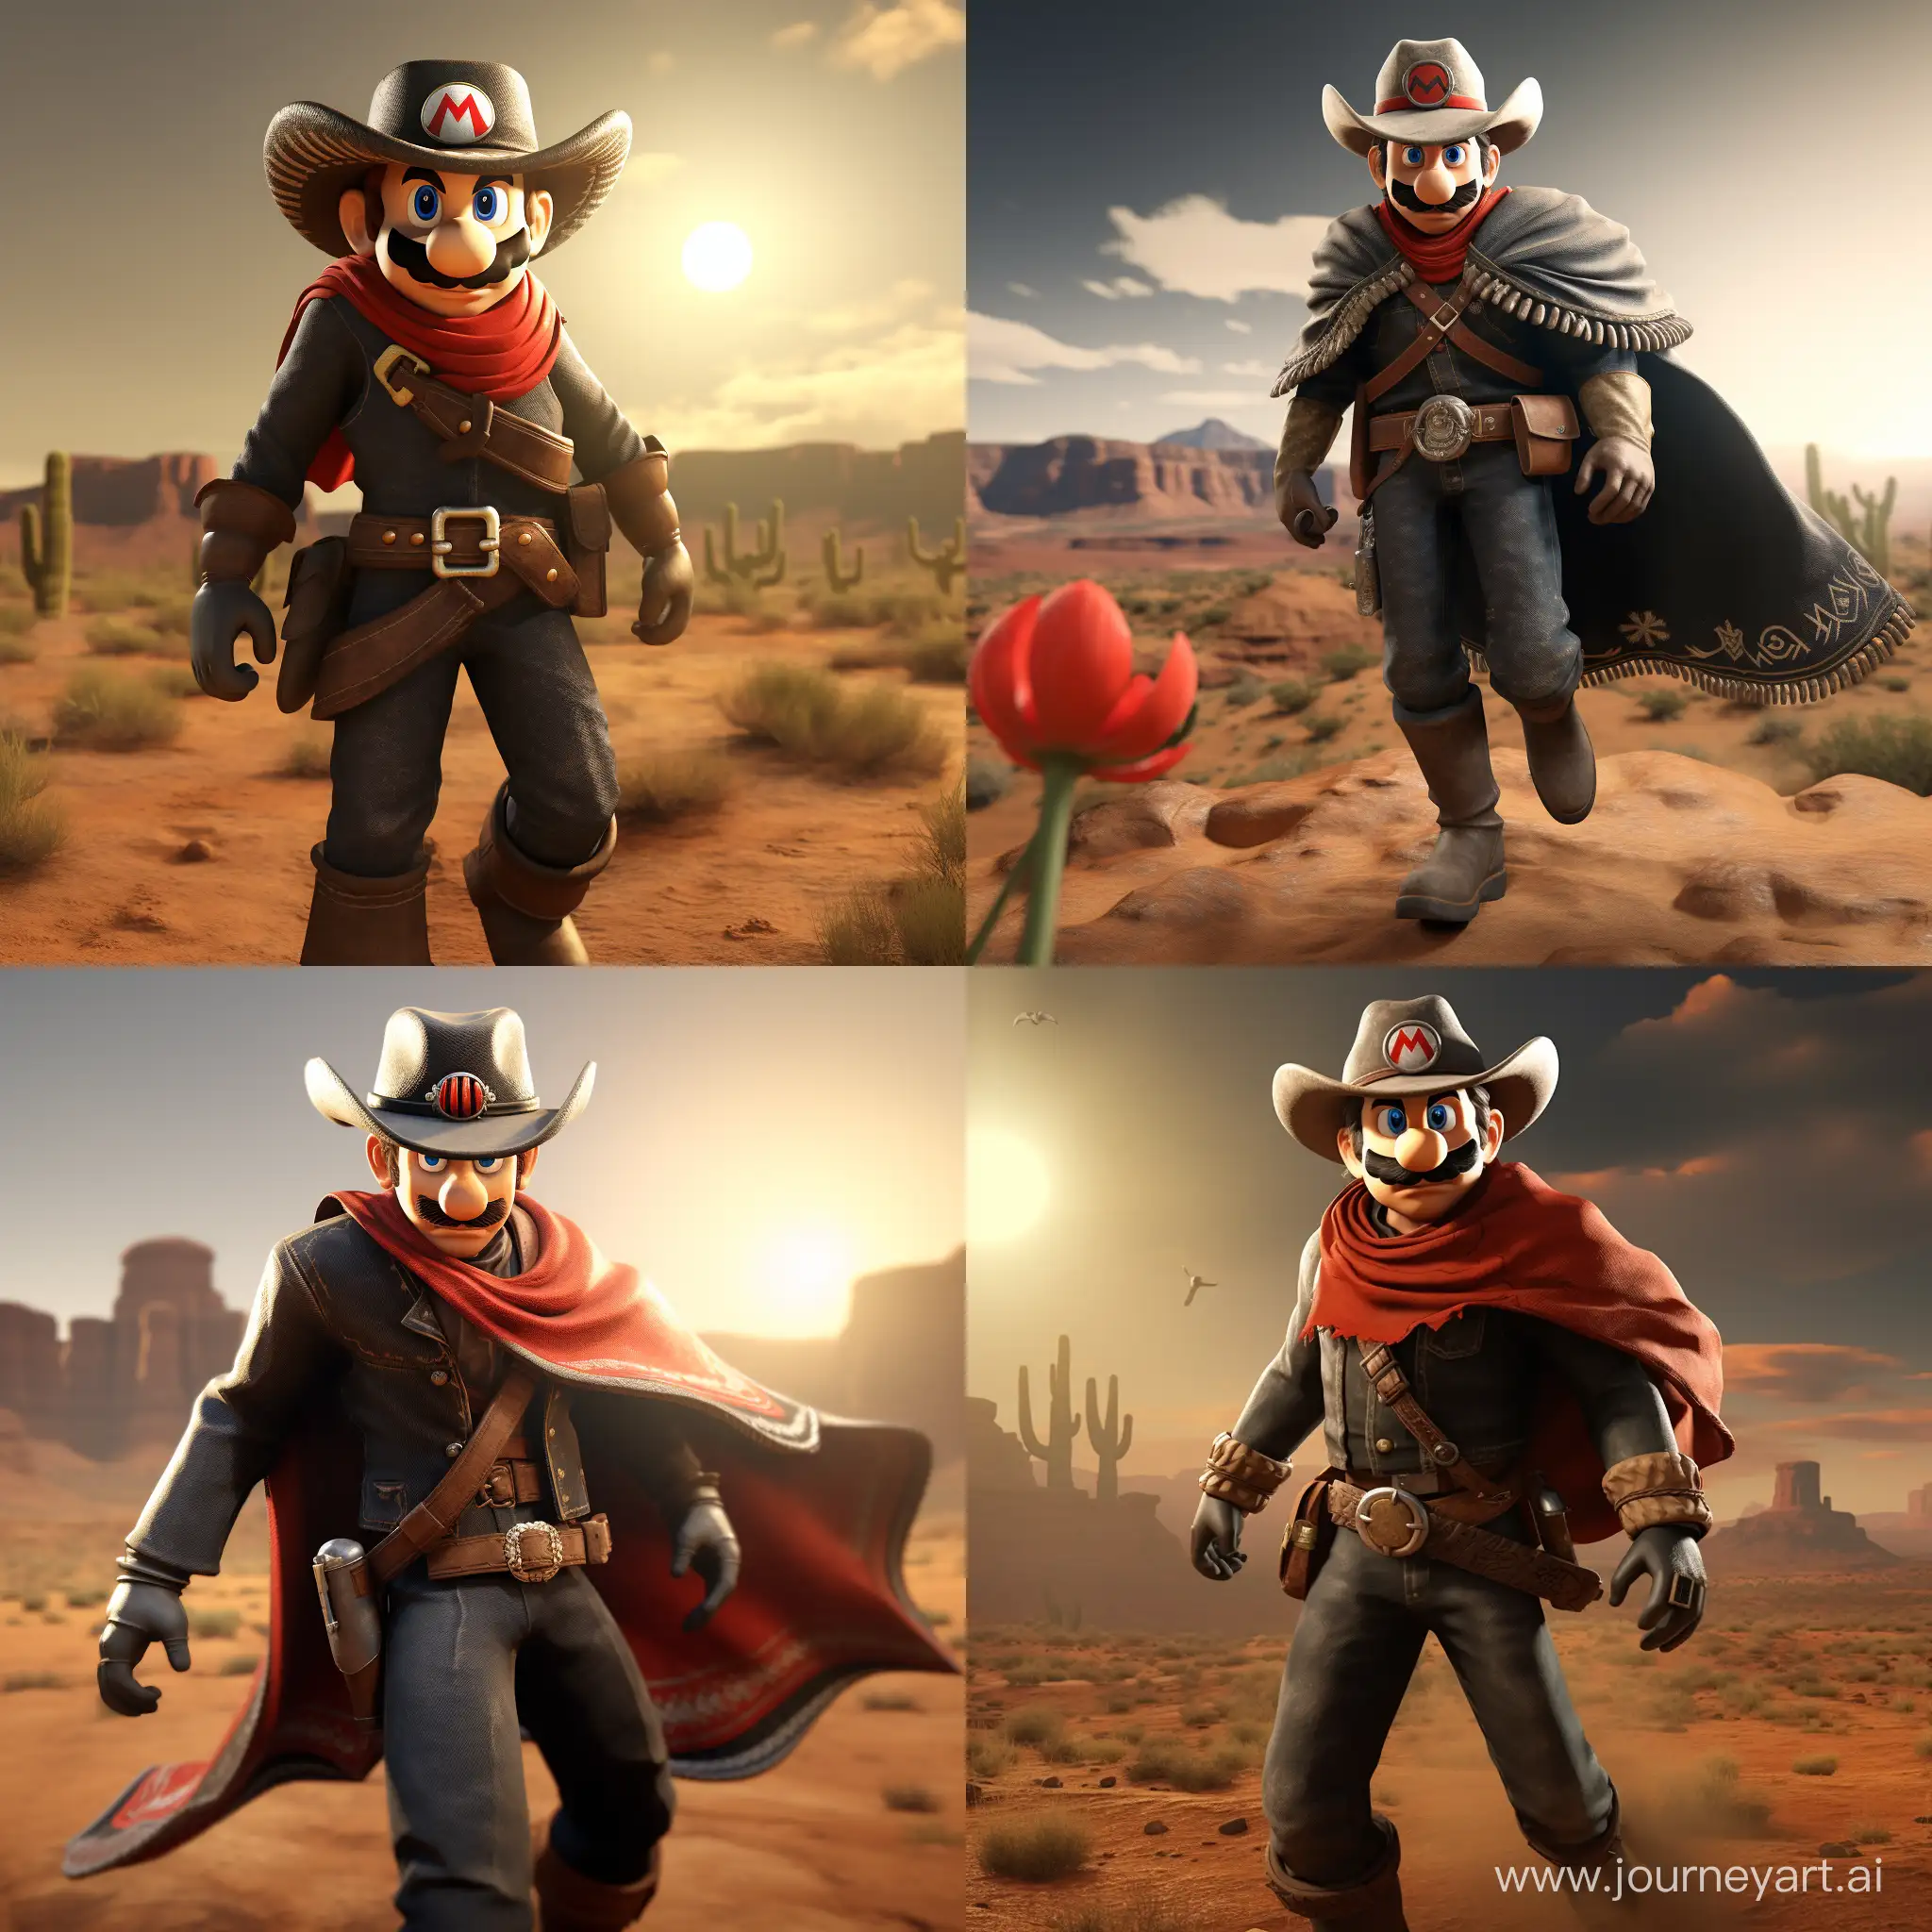 Super-Mario-in-Wild-West-Cowboy-Attire-Motion-Picture-Shot